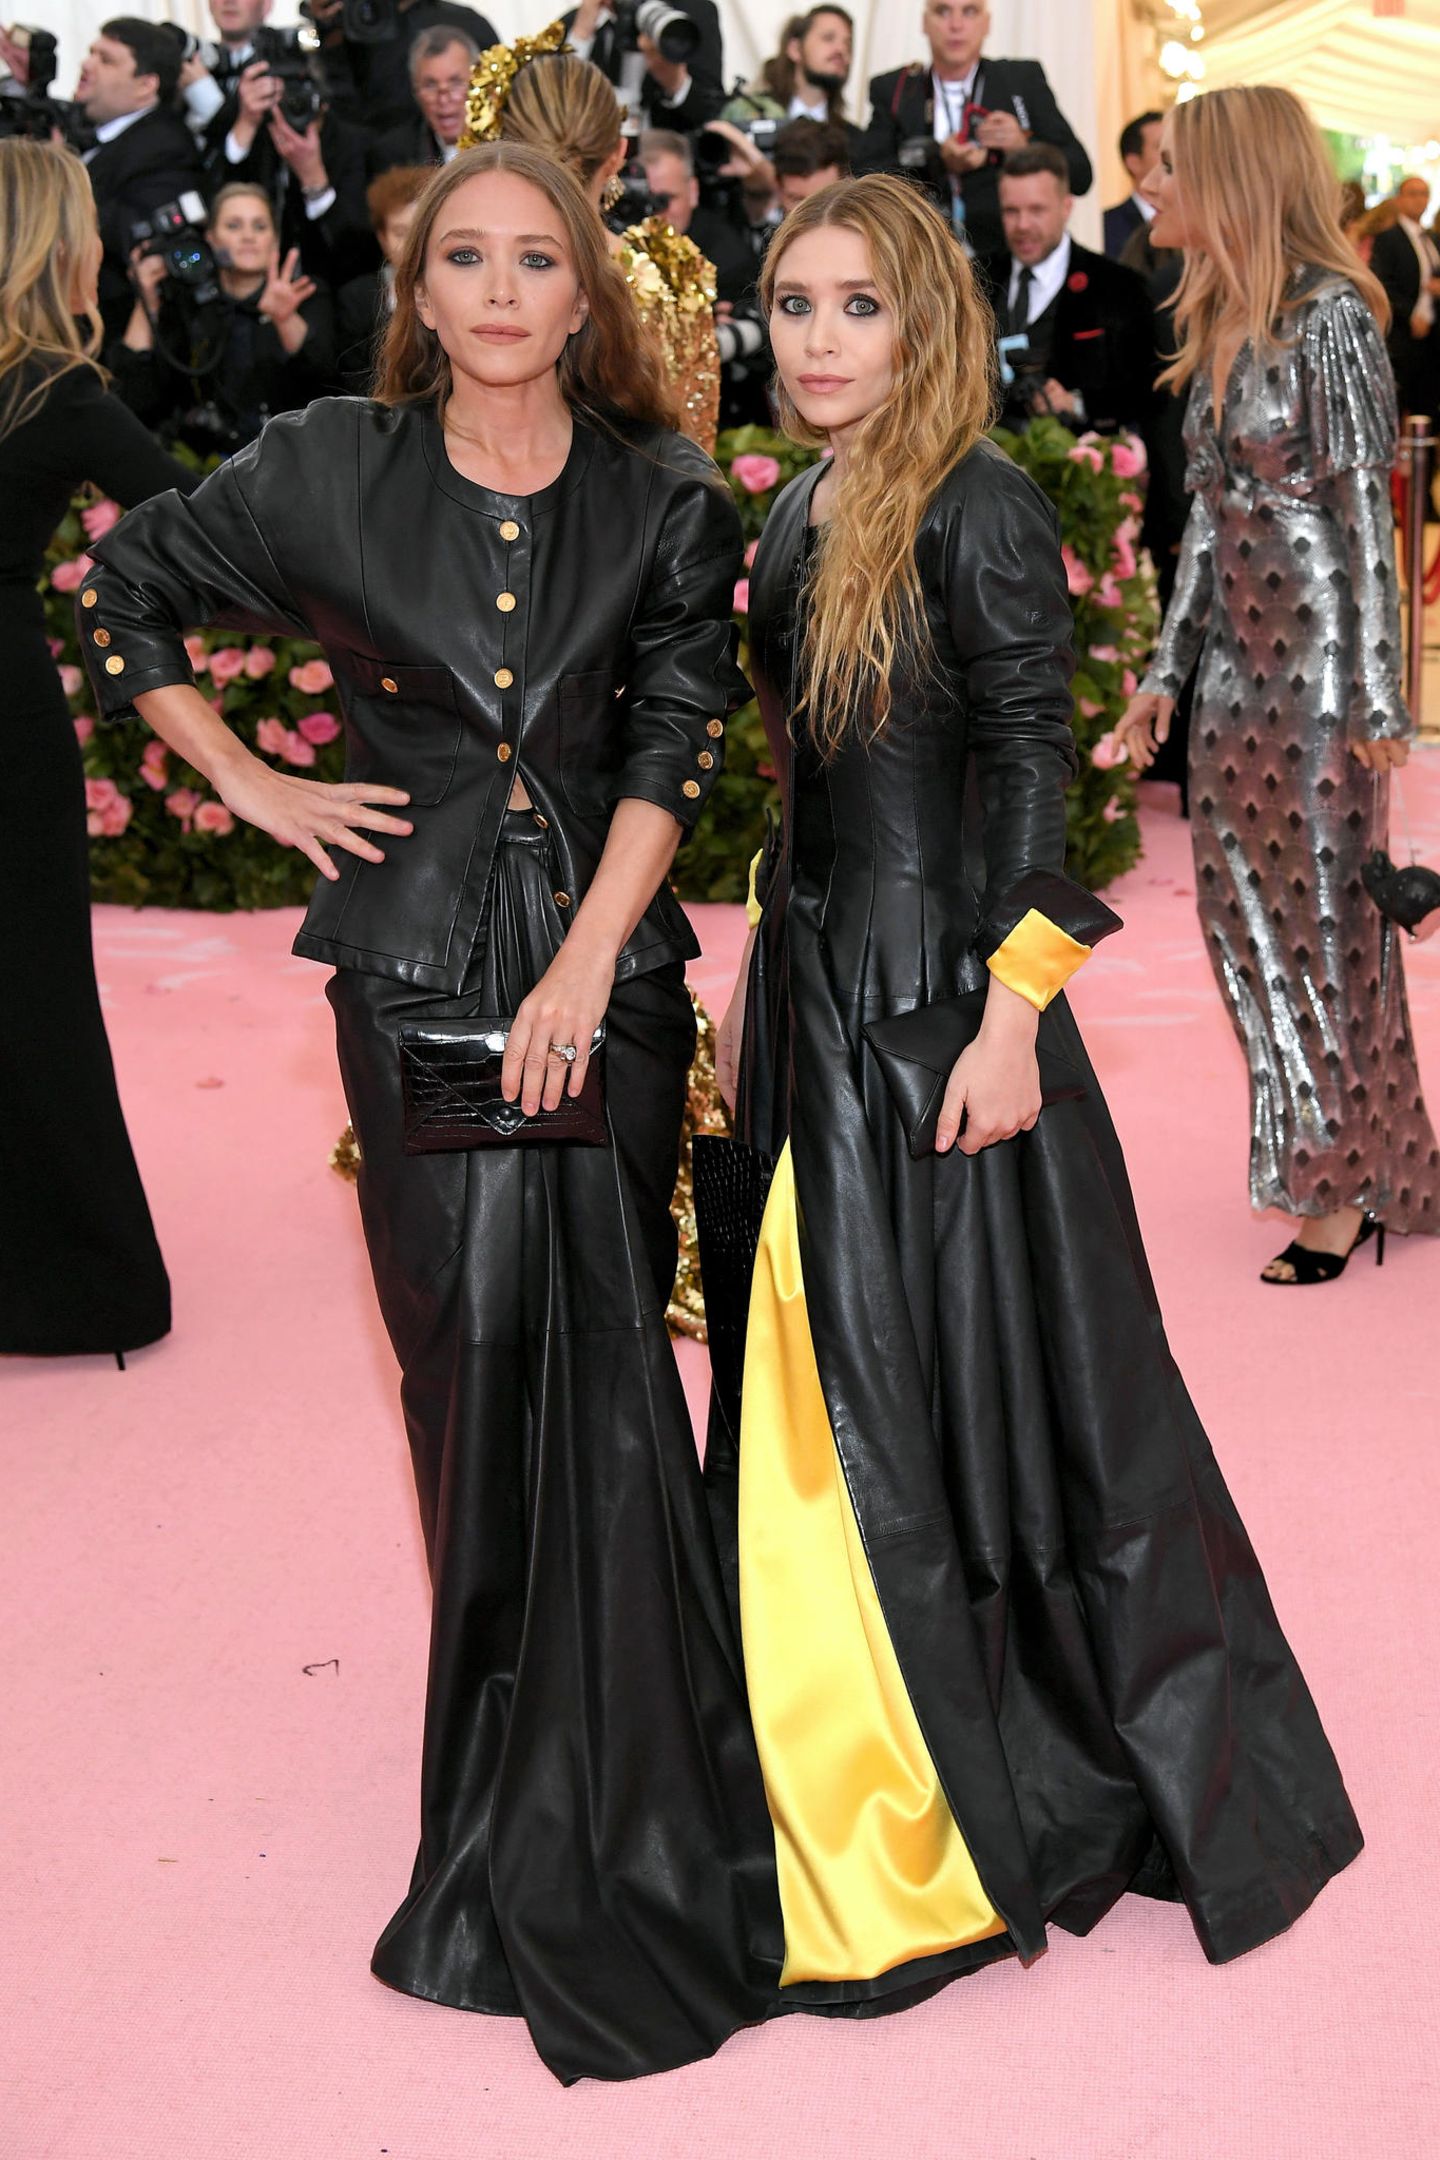 Das doppelte Lederchen: Die Zwillinge Mary Kate Olsen und Ashley Olsen zeigen sich im schwarzen Partnerlook bei der Met Gala.